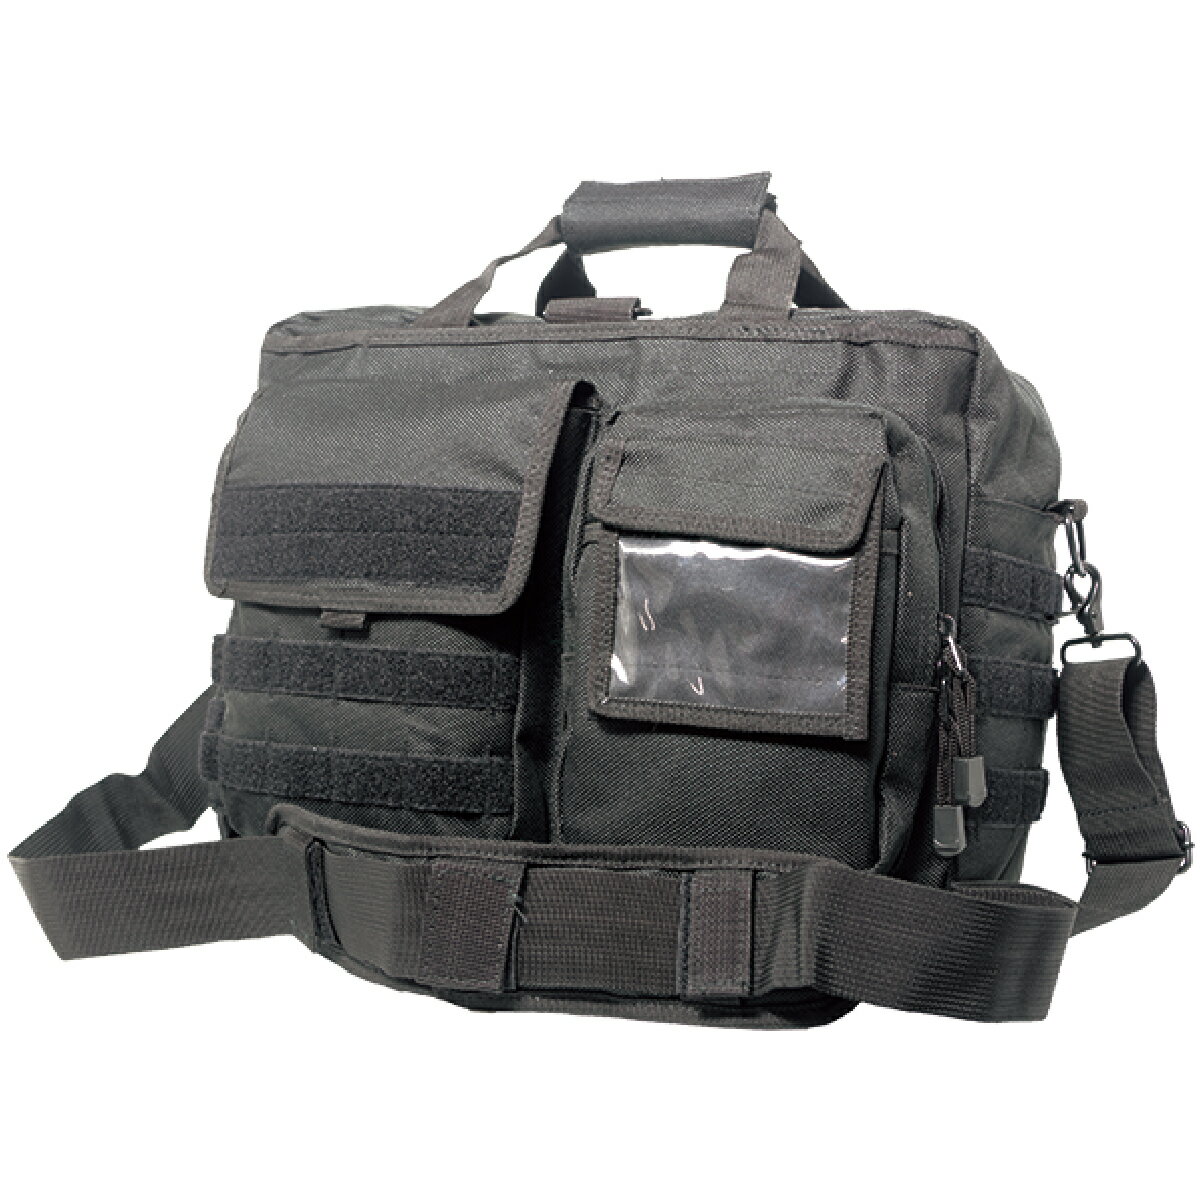 ストームクロス (STORMCROS) FOドキュメントバッグ LITE ブラック　A4対応 自衛隊 ミリタリー カモフラ バッグ 1134 手提げ鞄